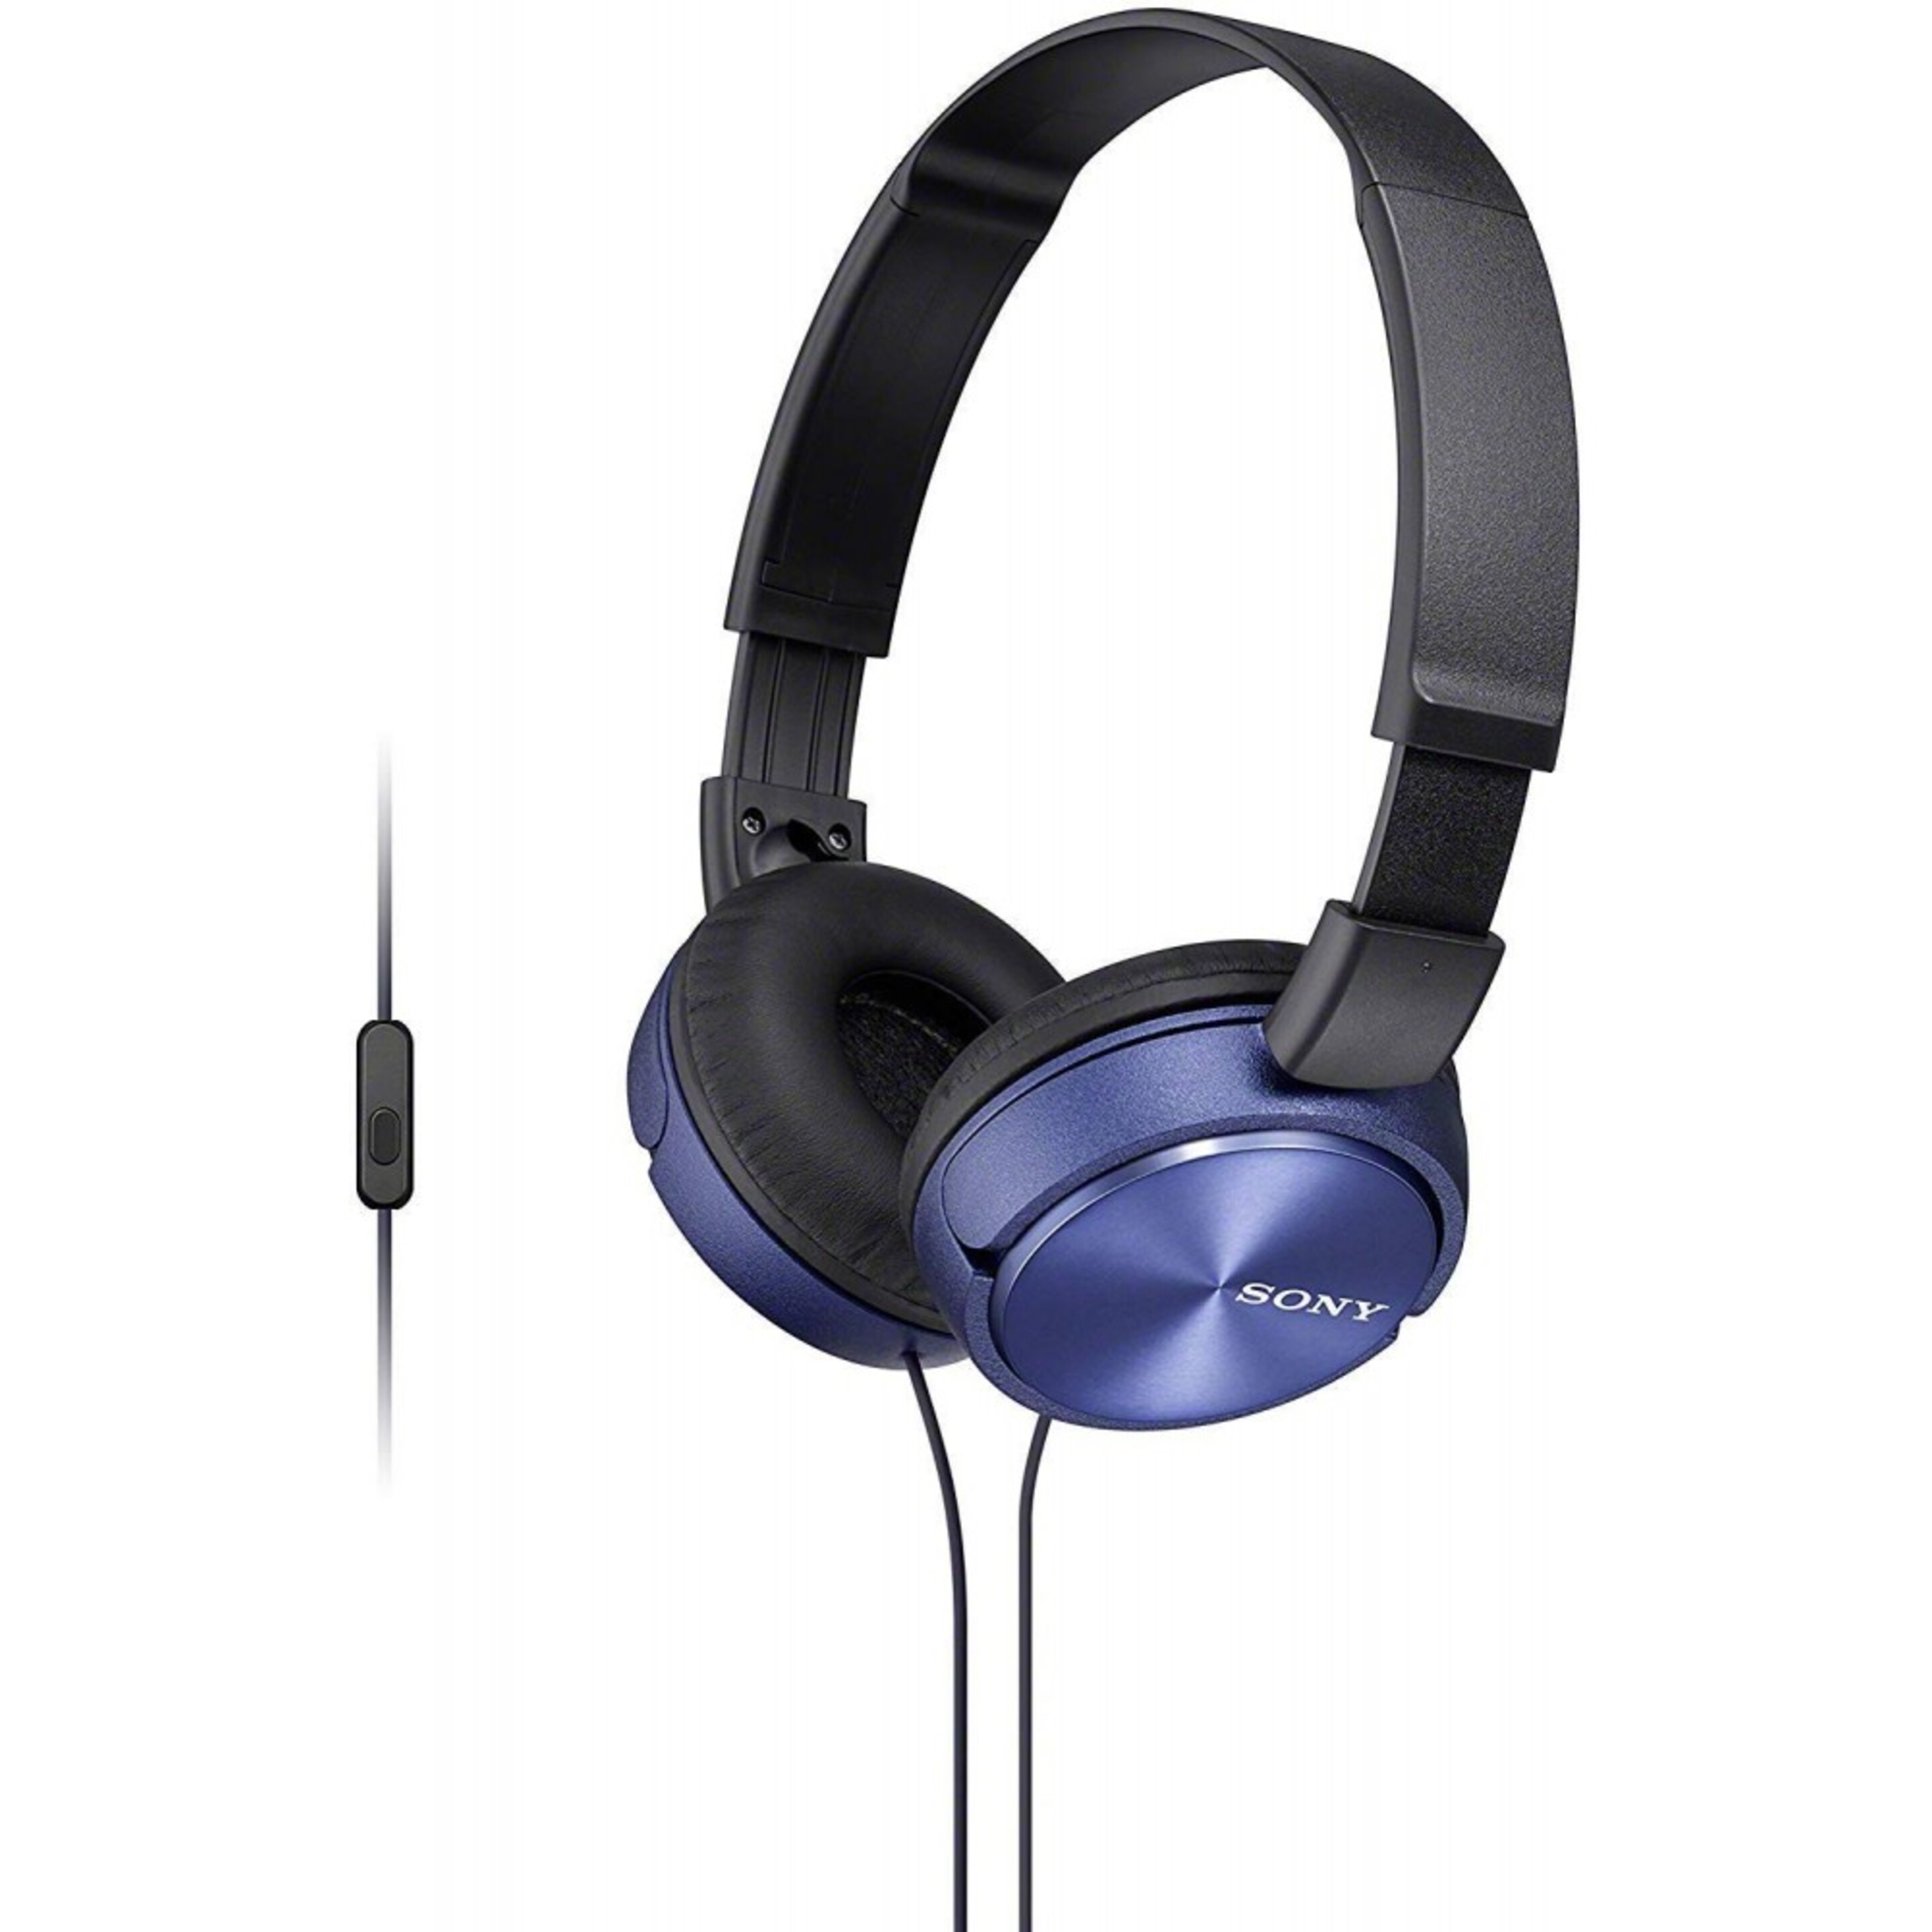 Sony Mdr-zx110 Auriculares Estéreo De Diadema Cerrados Azul